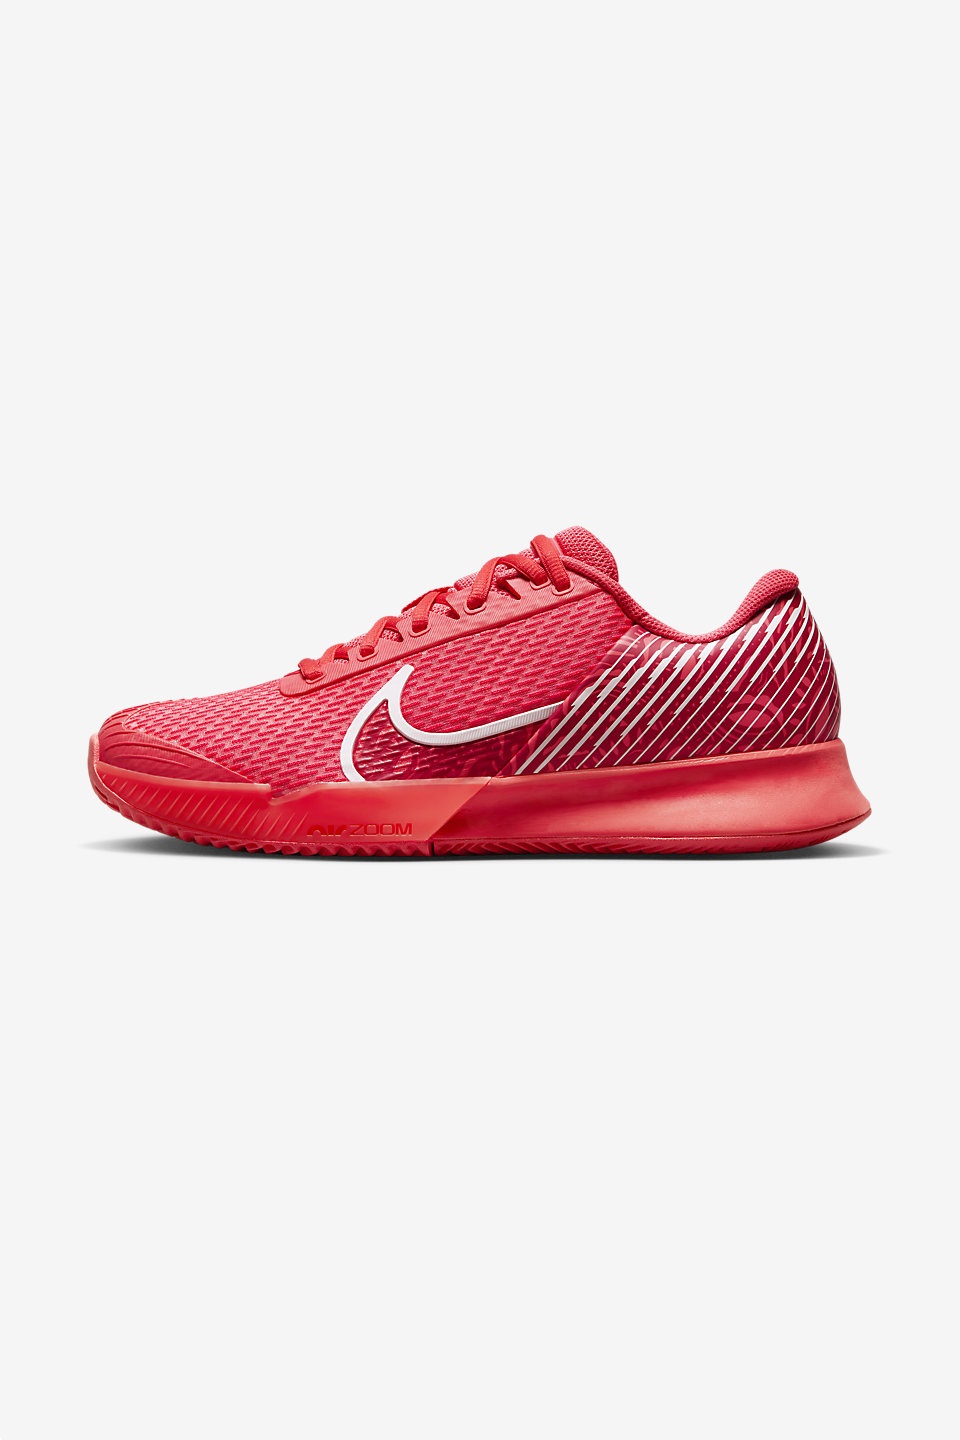 NIKE - NikeCourt Air Zoom Vapor Pro 2 Toprak Kort Erkek Tenis Ayakkabısı 